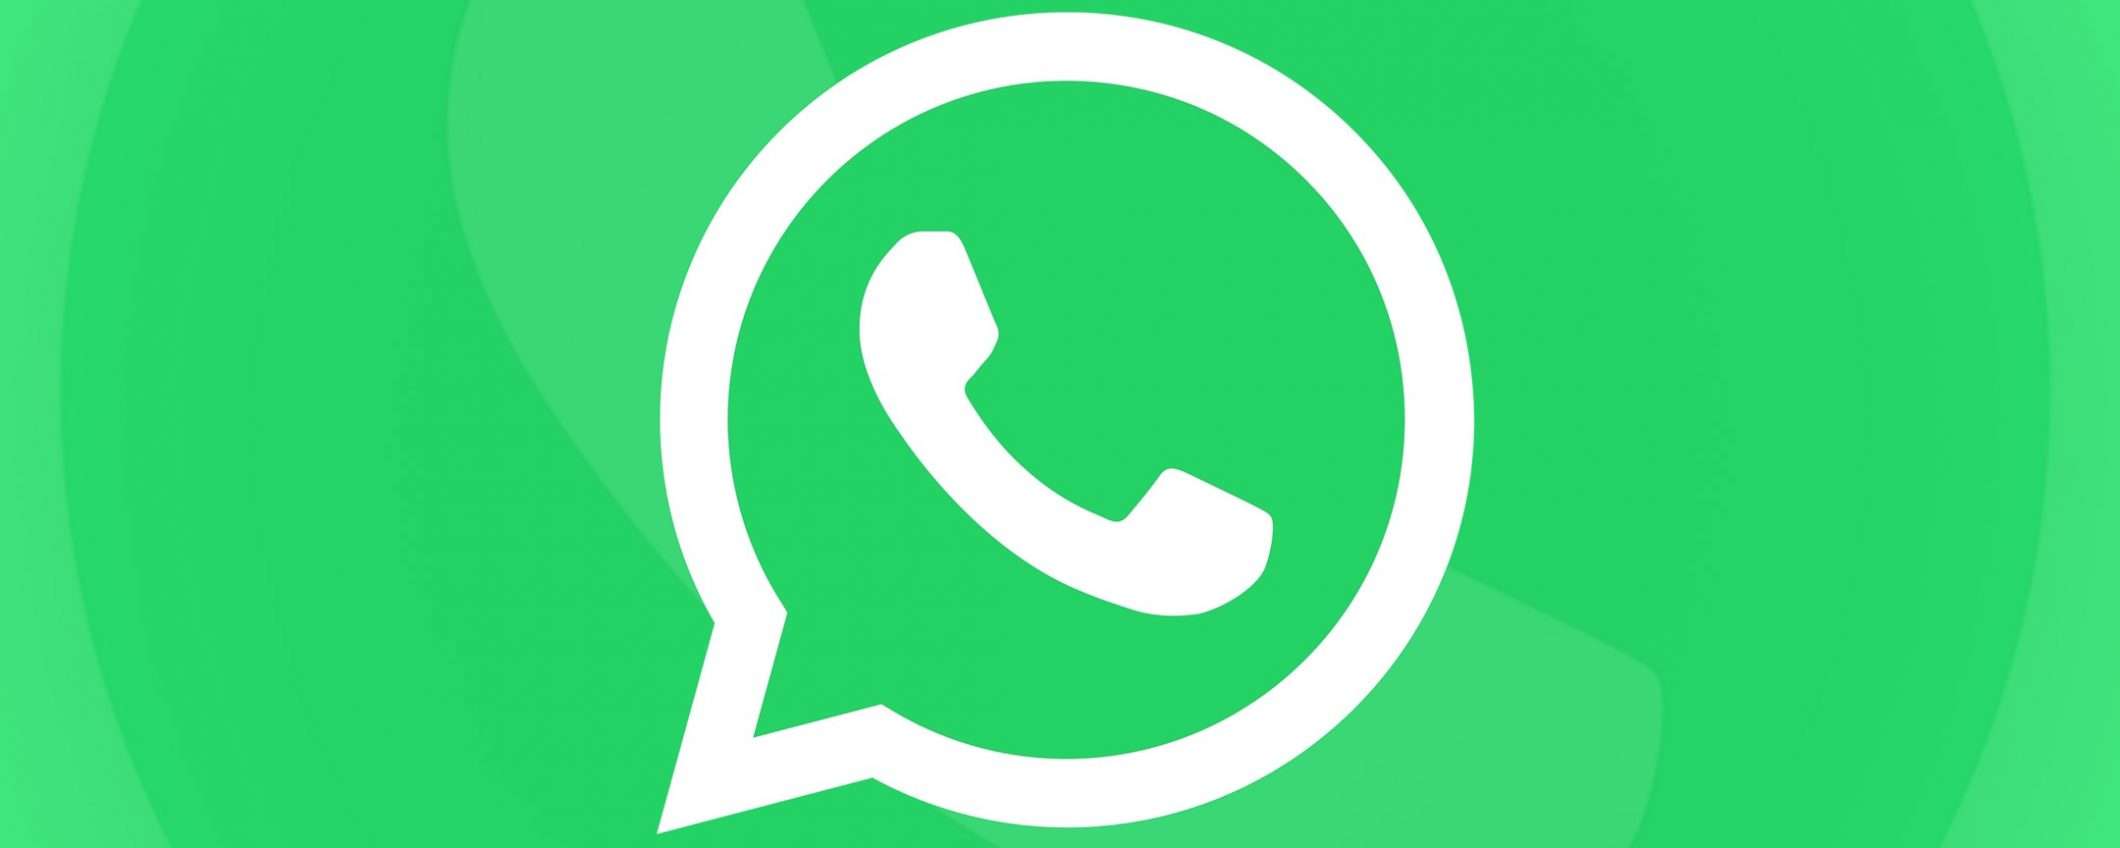 BEUC denuncia WhatsApp: nuova policy poco chiara (update)